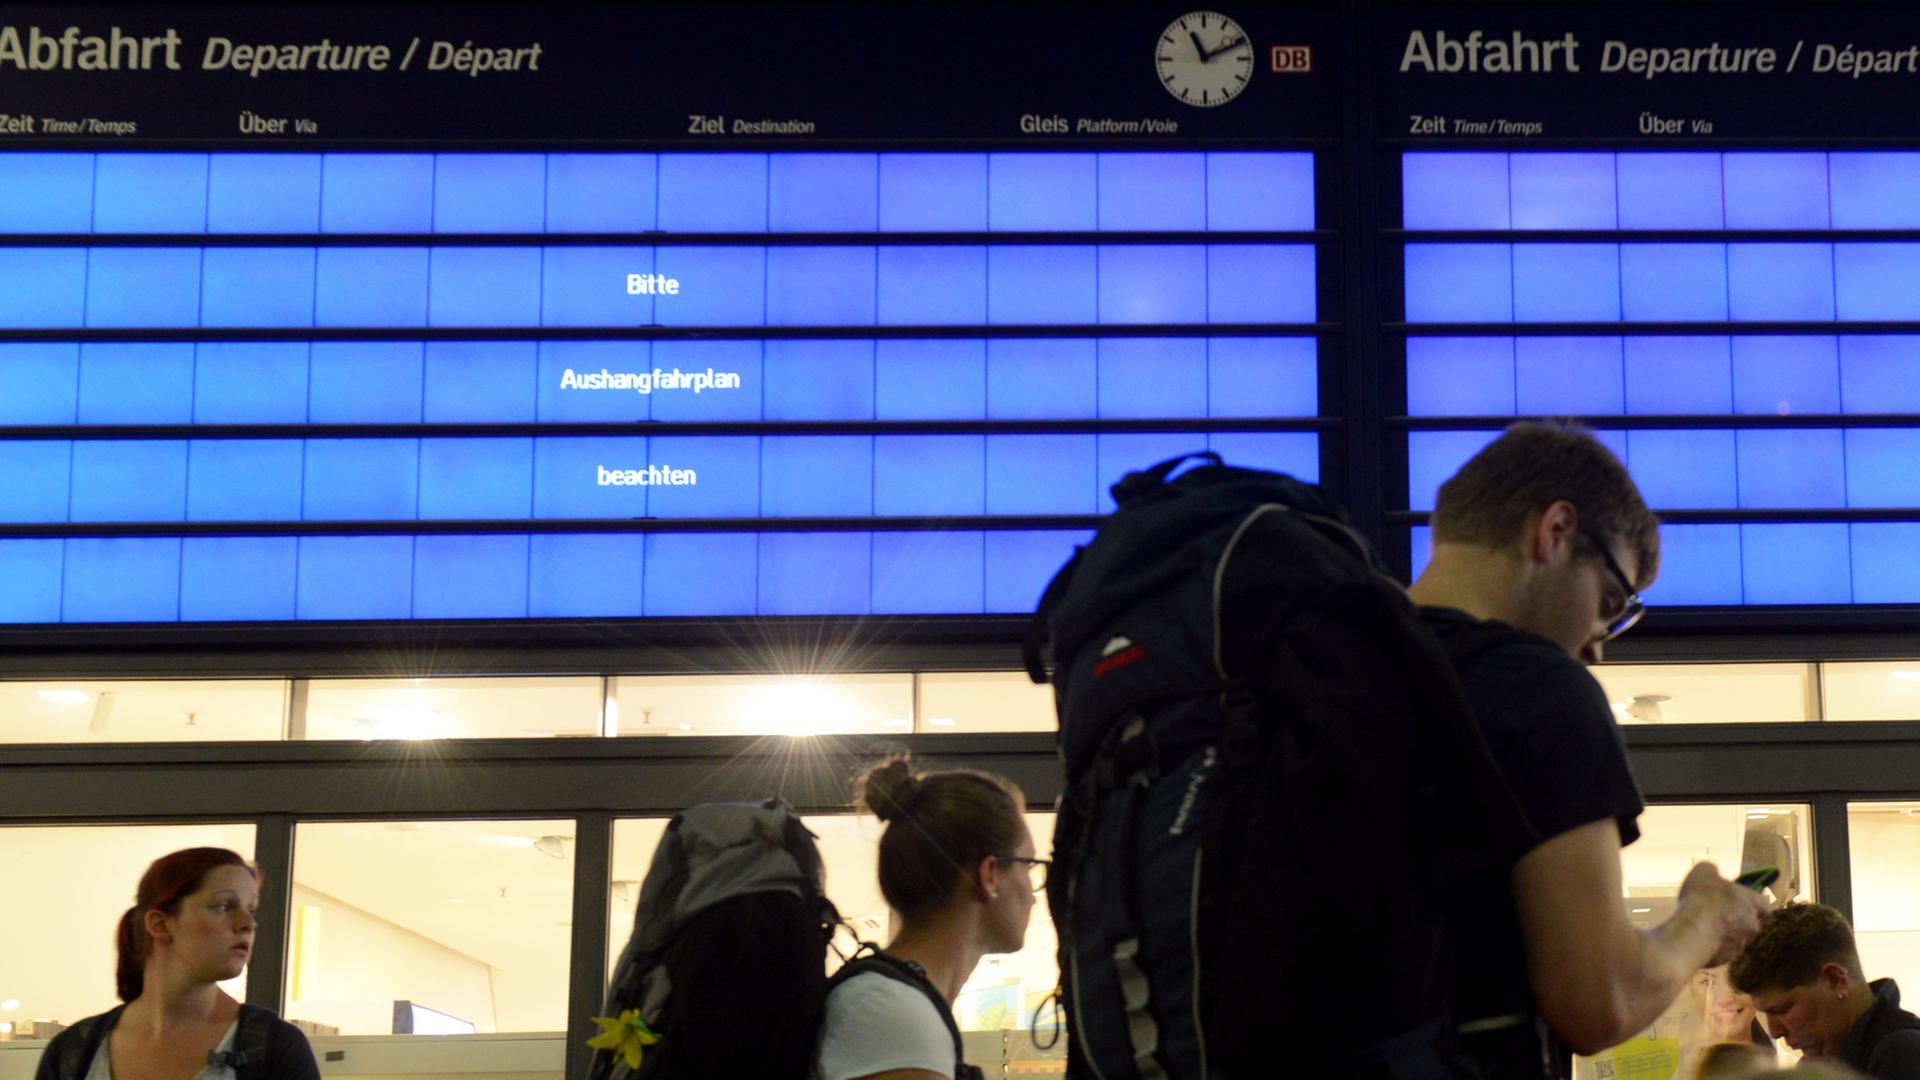 Reisende gehen am 10.06.2014 in Essen (Nordrhein-Westfalen) an der leeren Informationstafel im Hauptbahnhof vorbei, denn nach einem Unwetter ist der Bahnverkehr gestört und in Essen fährt kein Zug mehr.